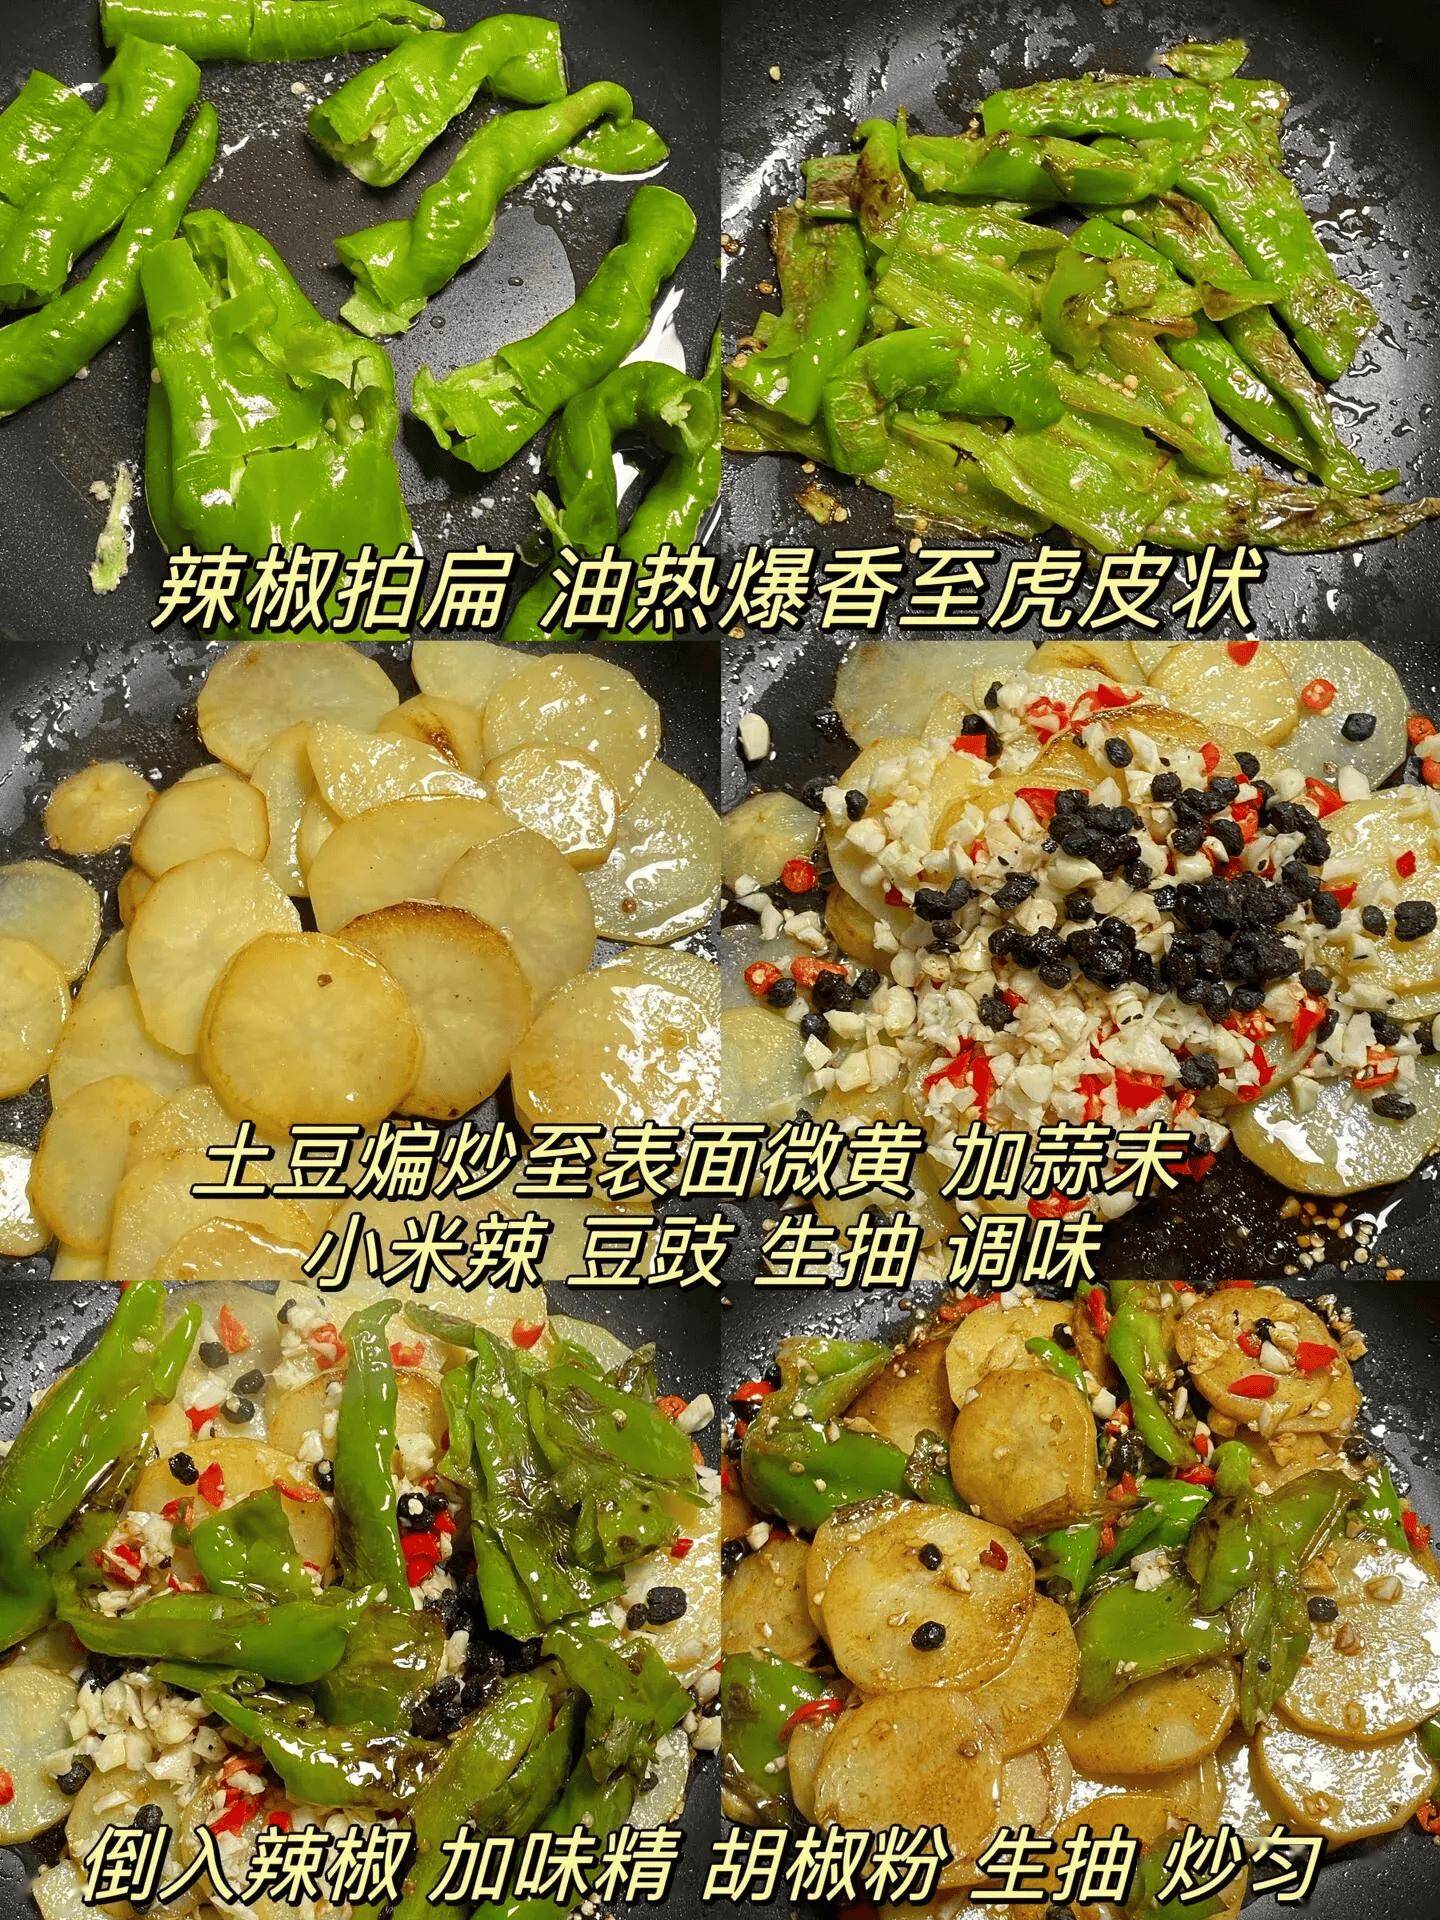 擂辣椒紫苏土豆片(紫苏炒土豆片做法窍门)